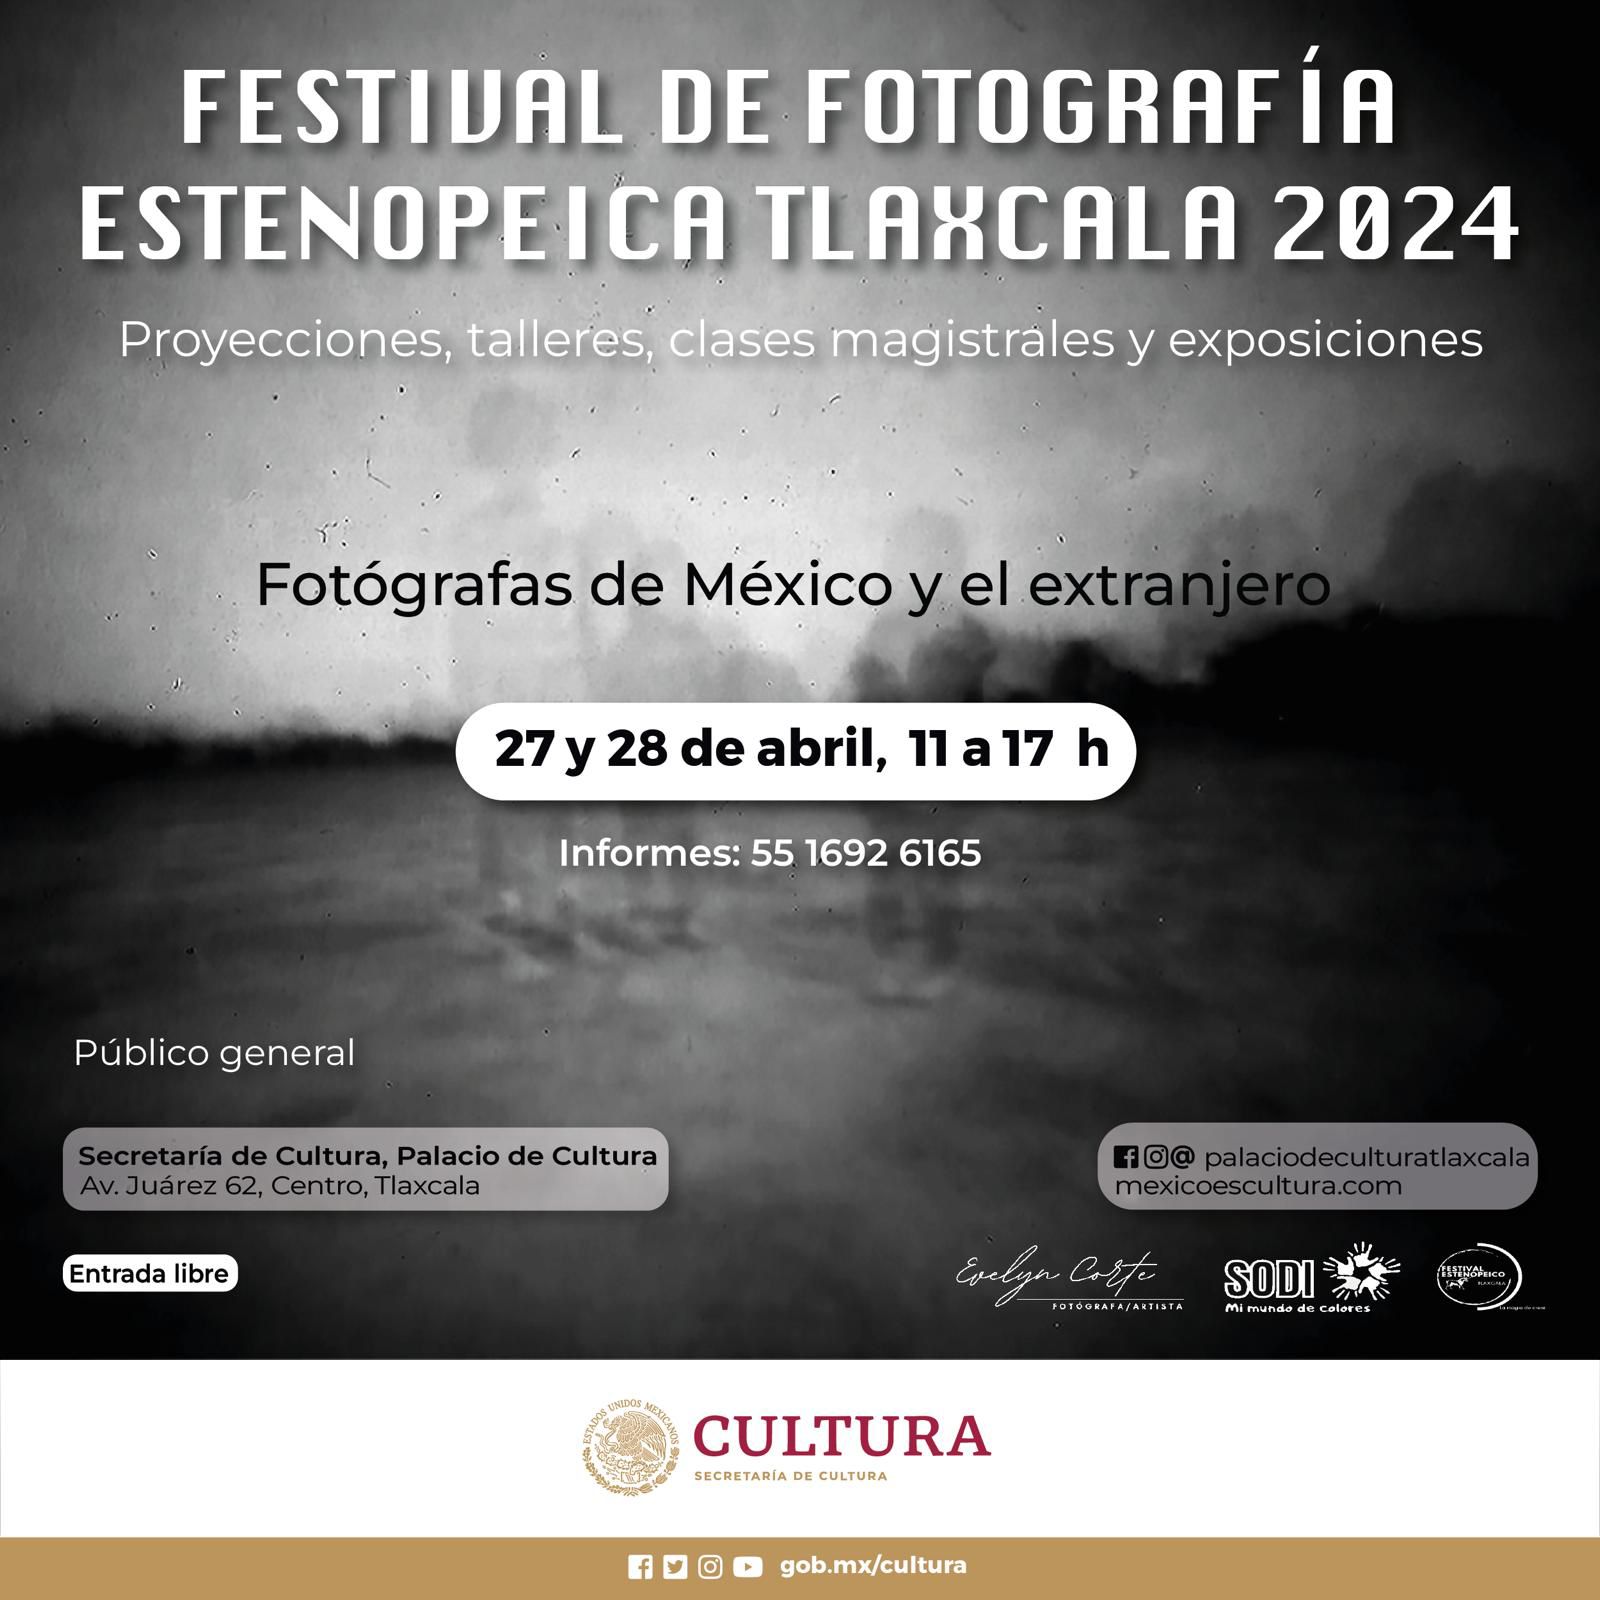 Por tercer año consecutivo, Tlaxcala recibe al Festival Internacional de Fotografía Estenopeica